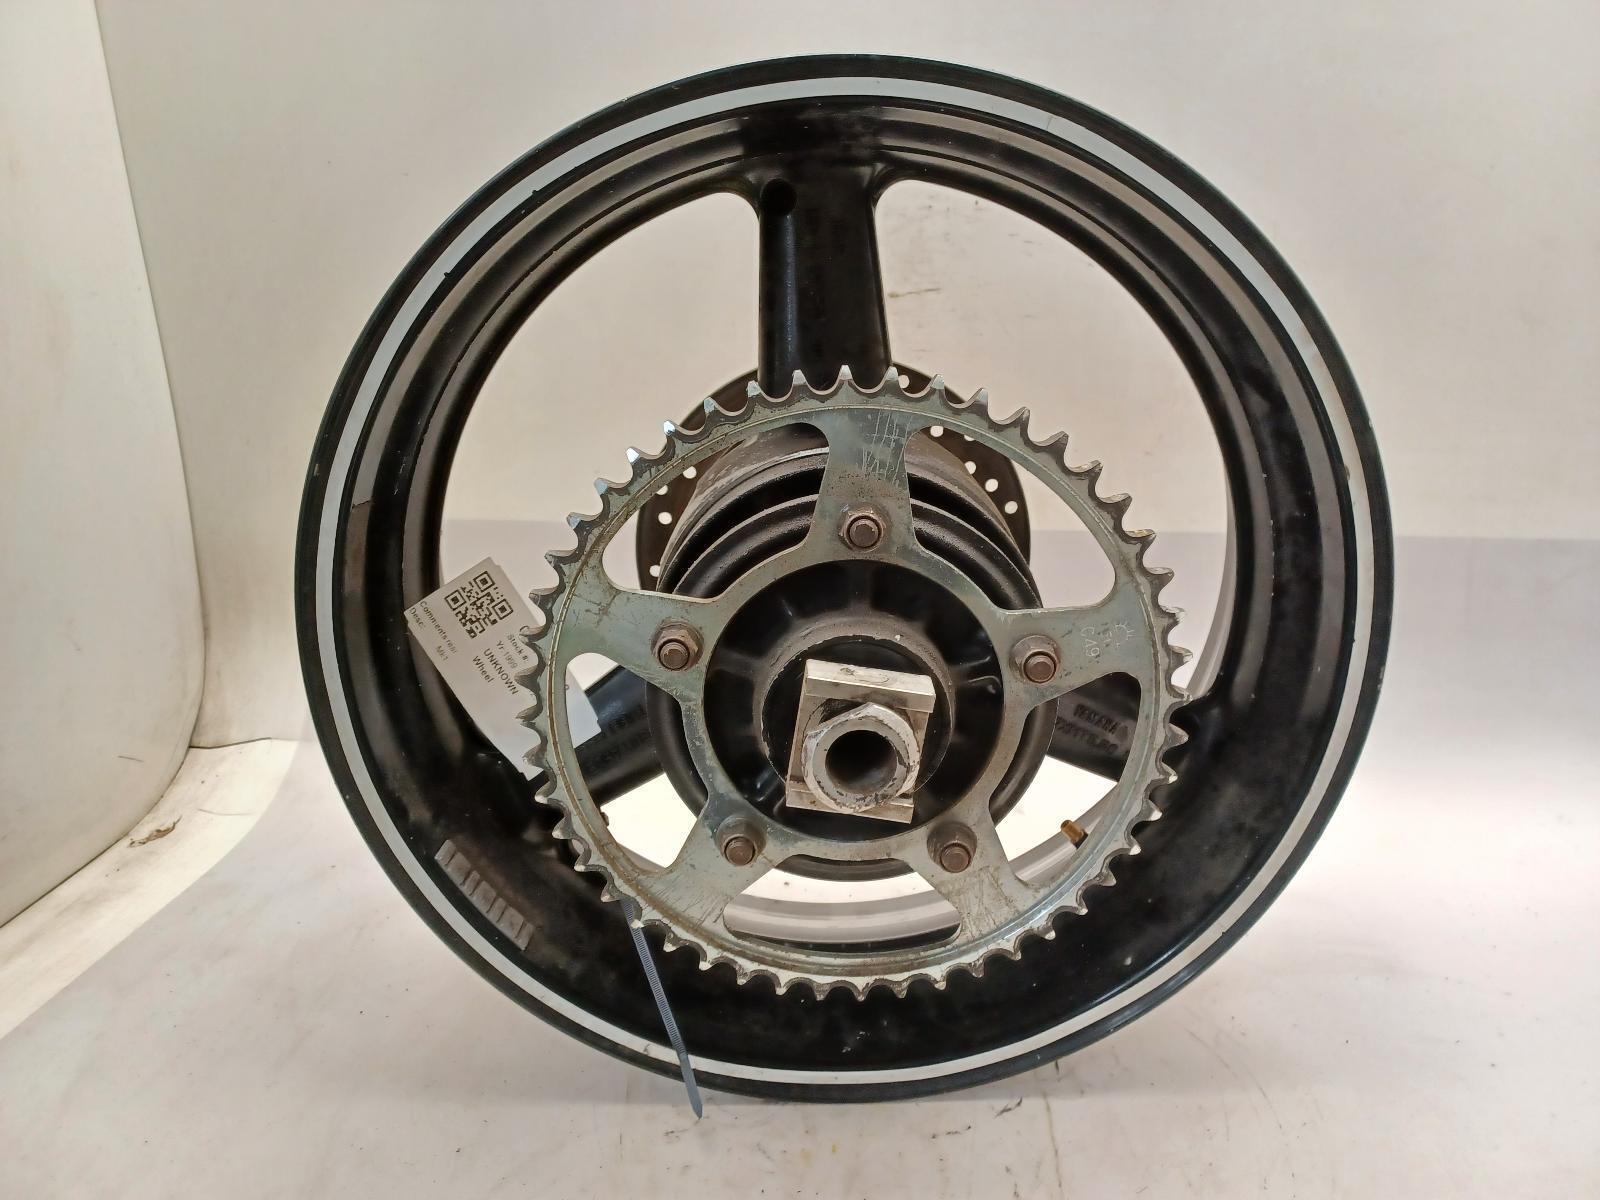 YAMAHA YZF R6 Rear Wheel 17 Inch MT5.50 1997-2014 